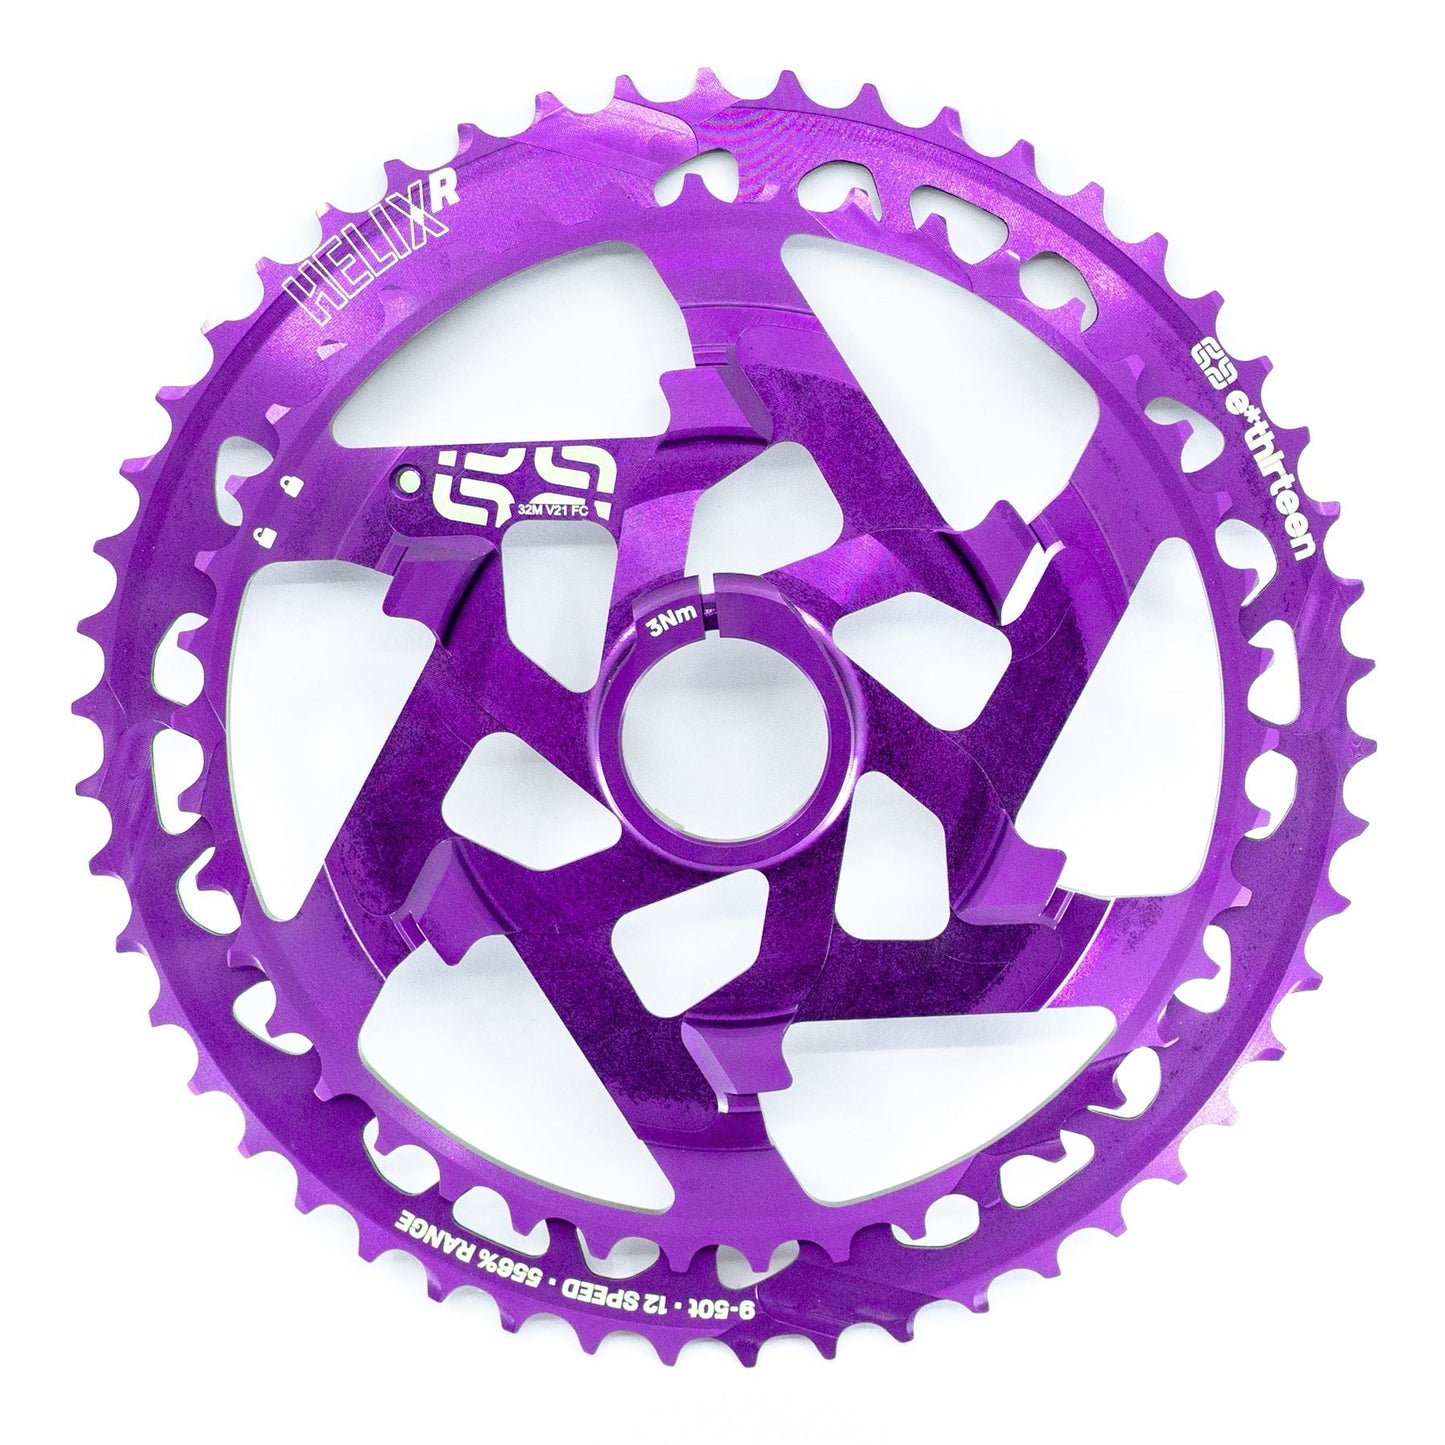 helix-12s-purple-al_664b3ae1-8853-4fbd-b8a2-b5d5f17e8d51.jpg ethirteen UK